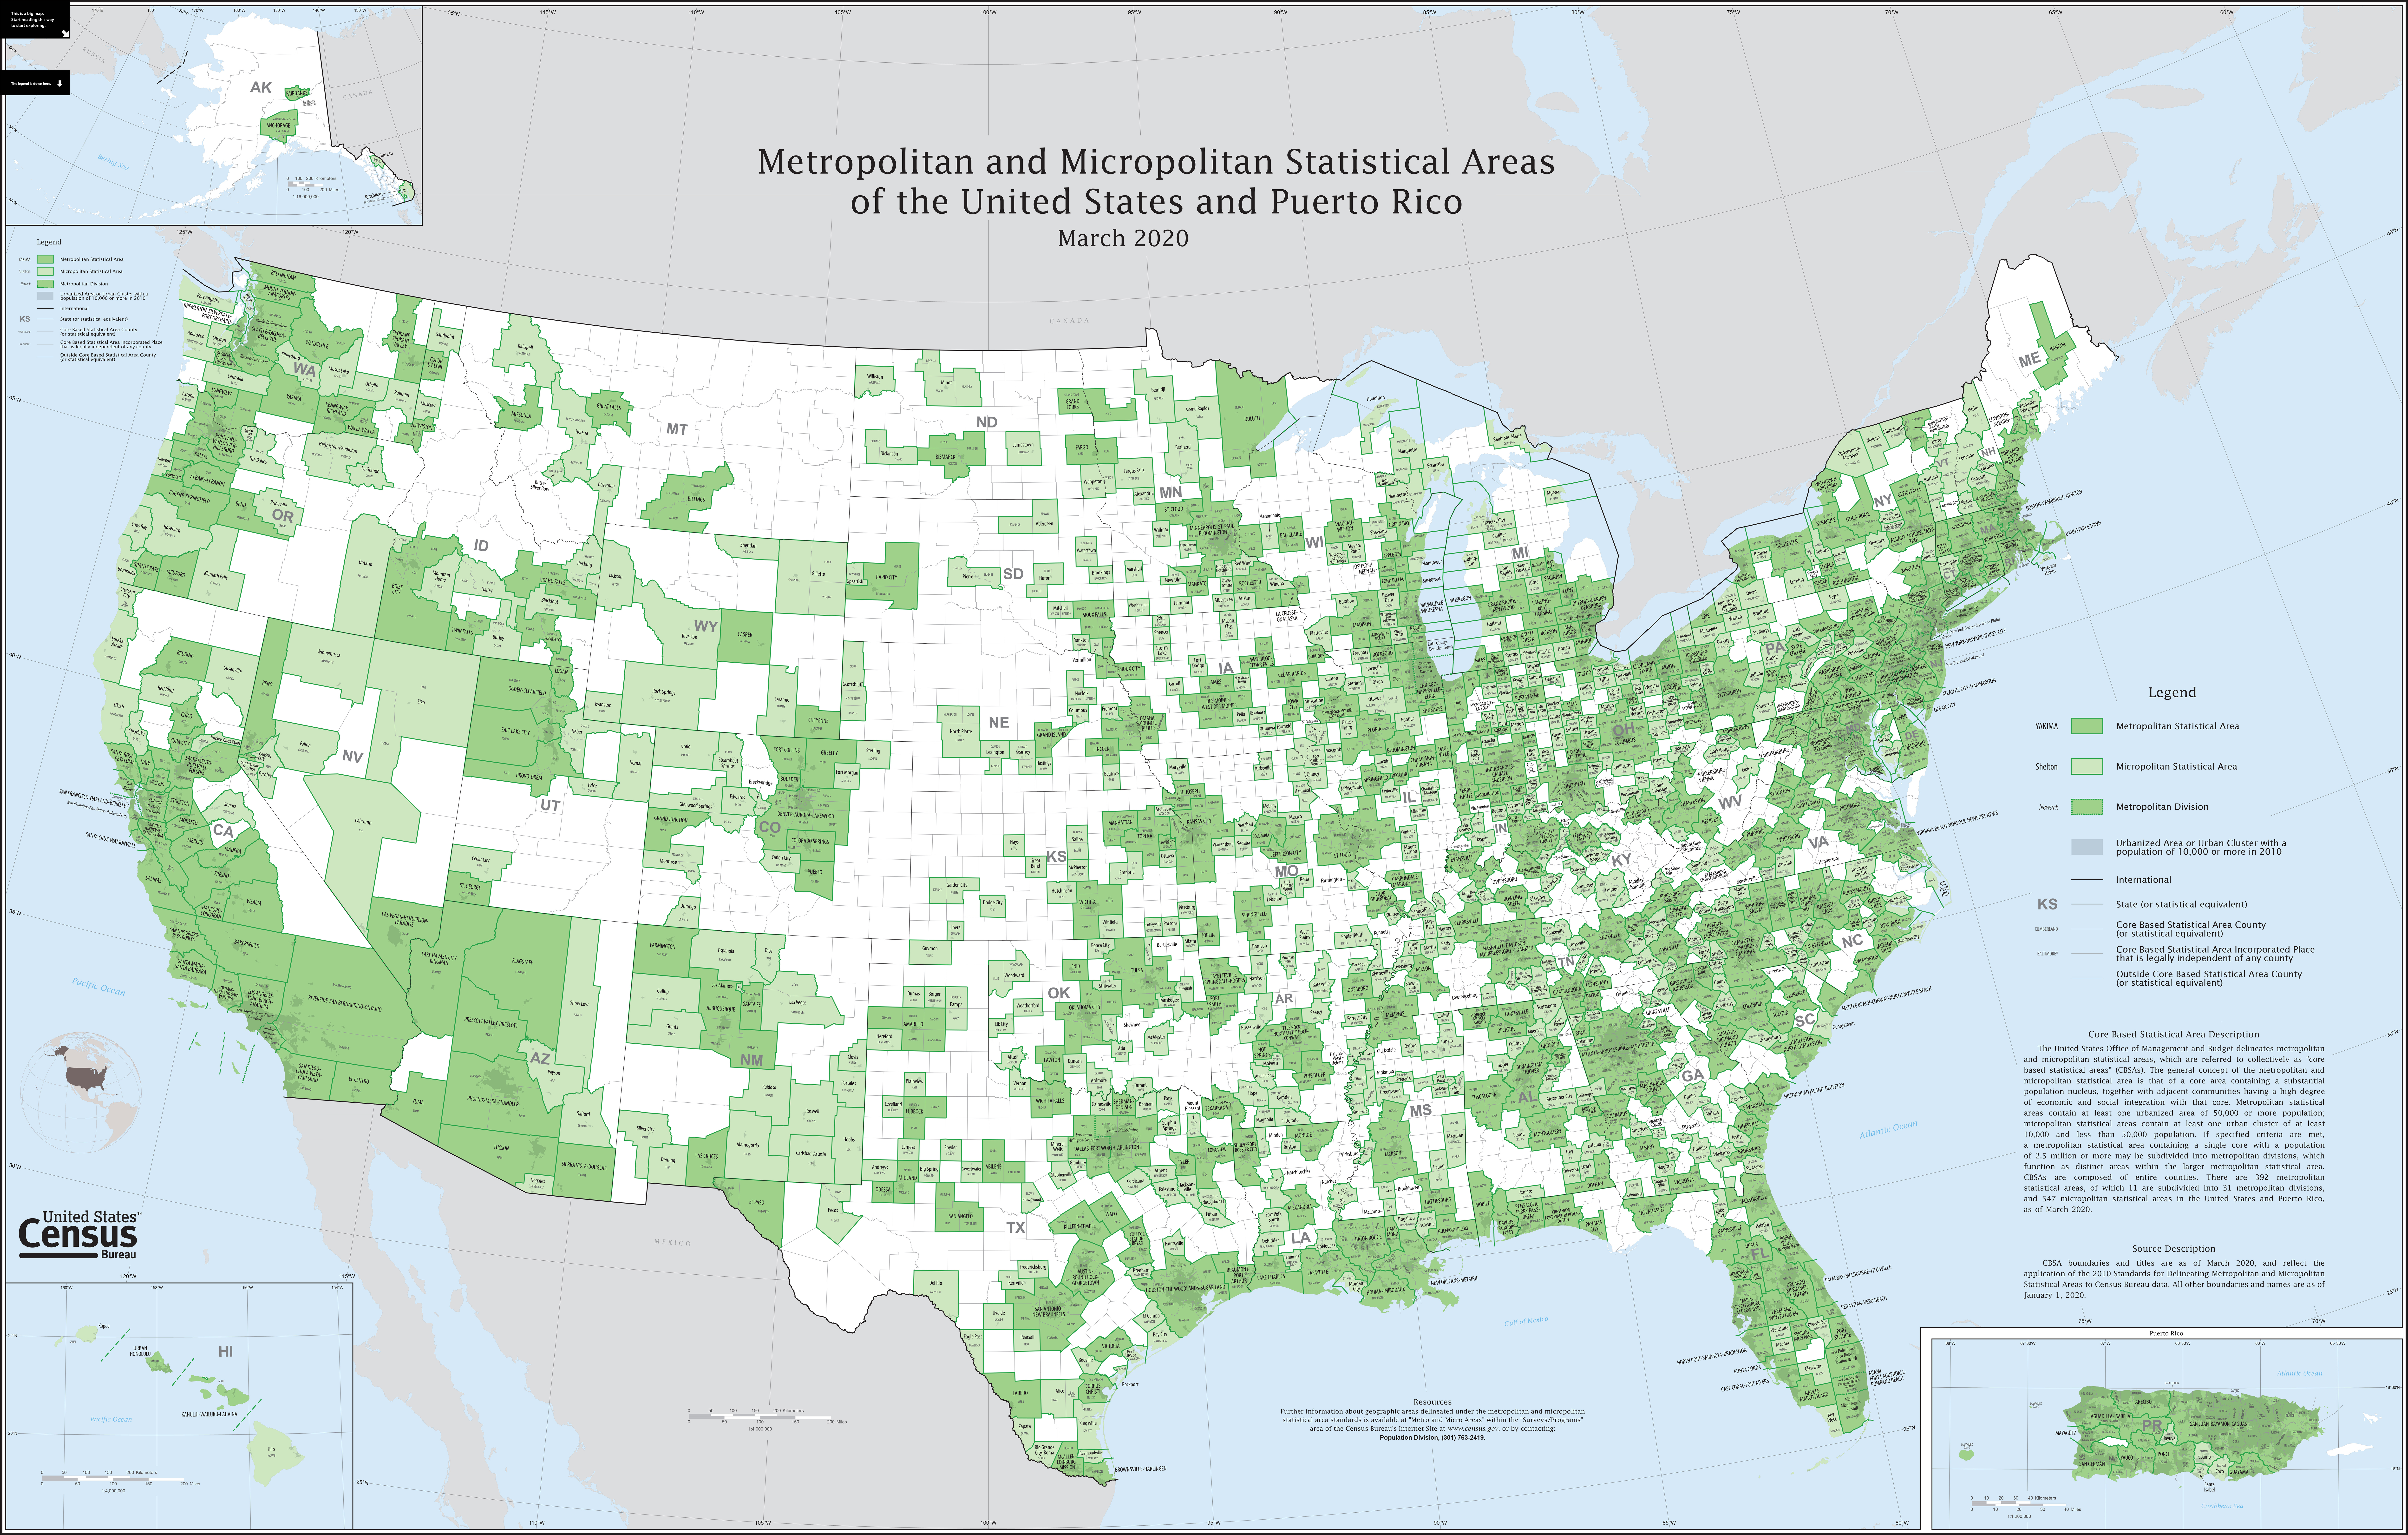 Metropolitan Areas in the U.S.